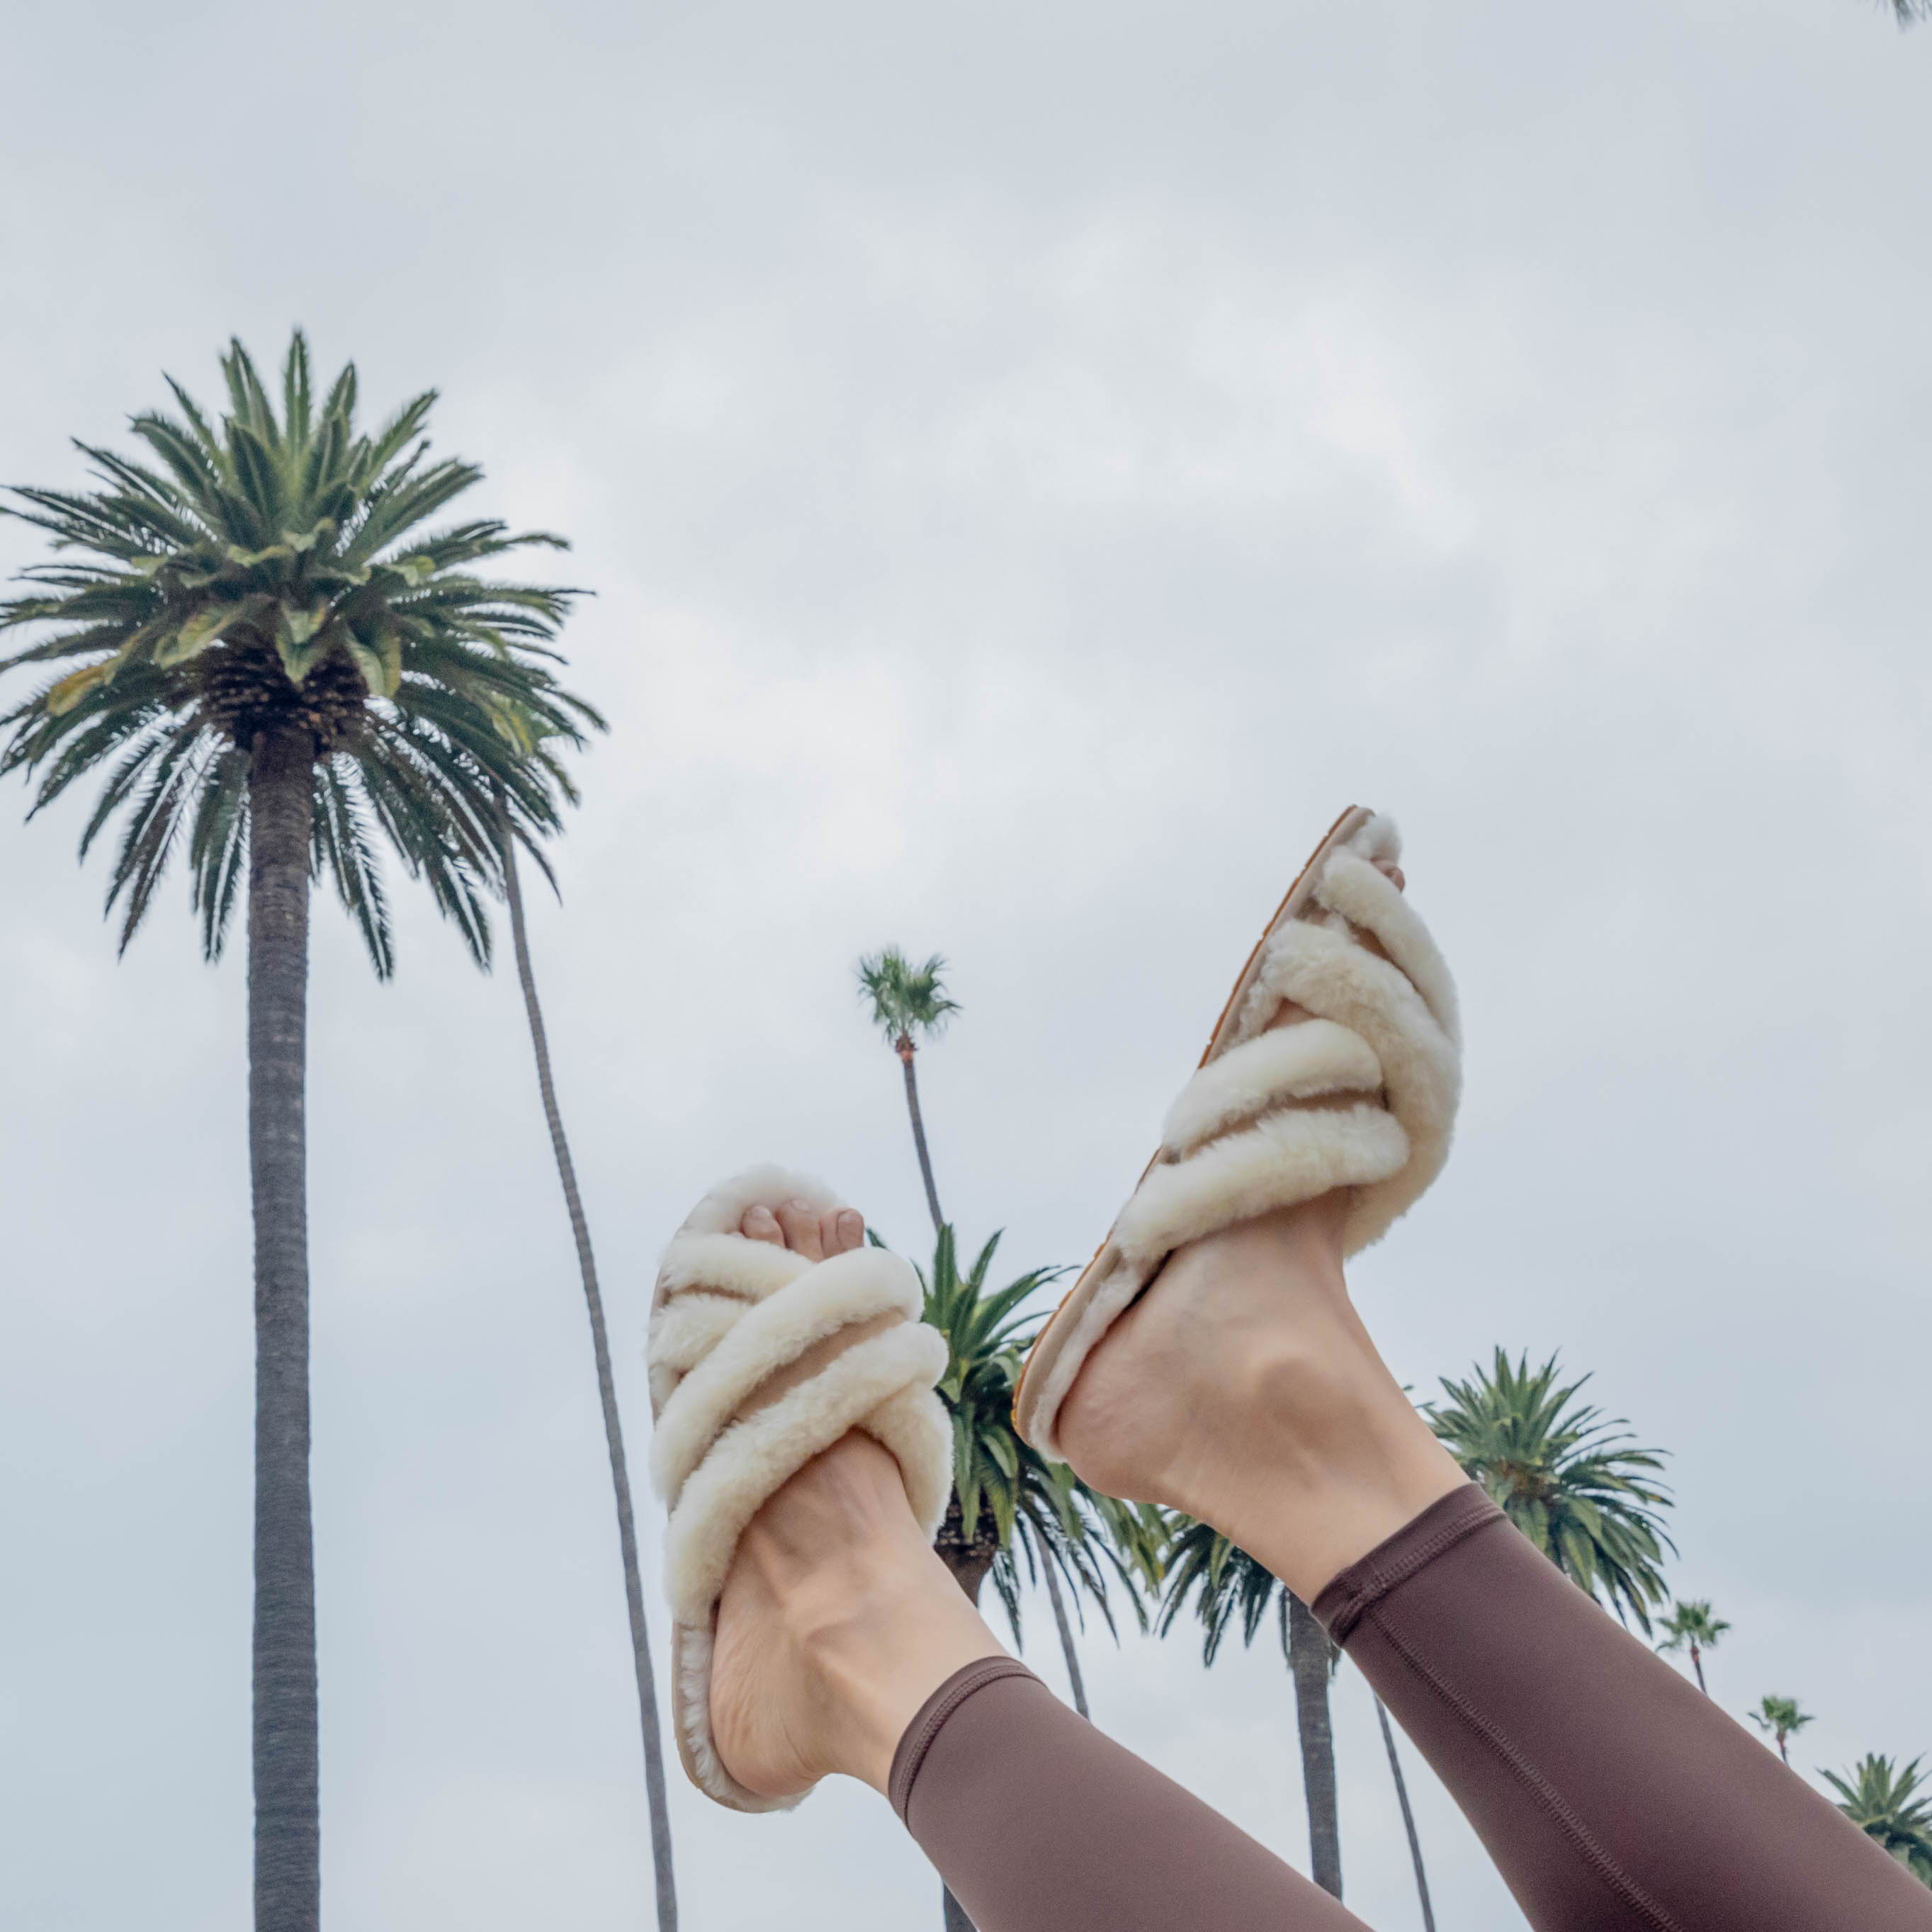 cream ugg slippers on female model's feet